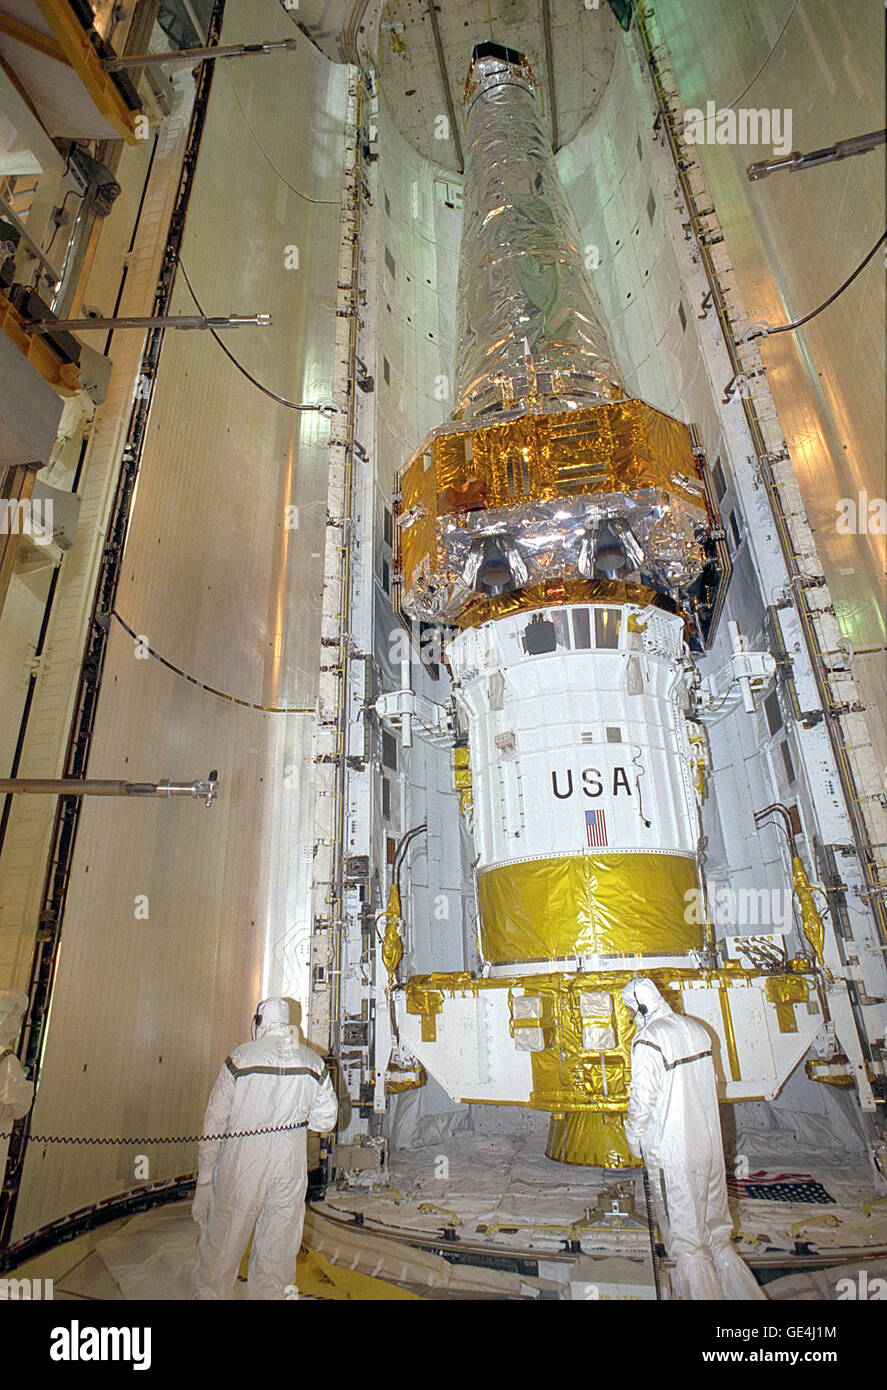 Bei Launch Pad 39 b das Space Shuttle Columbia Nutzlast Bucht Türen schließen um das Chandra x-Ray Observatory im Inneren, während Arbeiter die Aktivität zu überwachen. Chandra war die primäre Nutzlast auf Mission STS-93, an Bord der Columbia 20 Juli um 12:36 Uhr EDT starten soll. Die kombinierte Chandra/Inertial Upper Stage, hier zu sehen, gemessen 57 Fuß lang und wiegt 50.162 Pfund. Voll im Einsatz mit Solaranlagen erweitert, die Sternwarte gemessen 45,3 Füße lang und 64 Fuß breit. Der weltweit mächtigsten Röntgenteleskops Chandra erlaubt Wissenschaftlern aus auf der ganzen Welt zu sehen, bisher unsichtbare schwarzes Loch Stockfoto